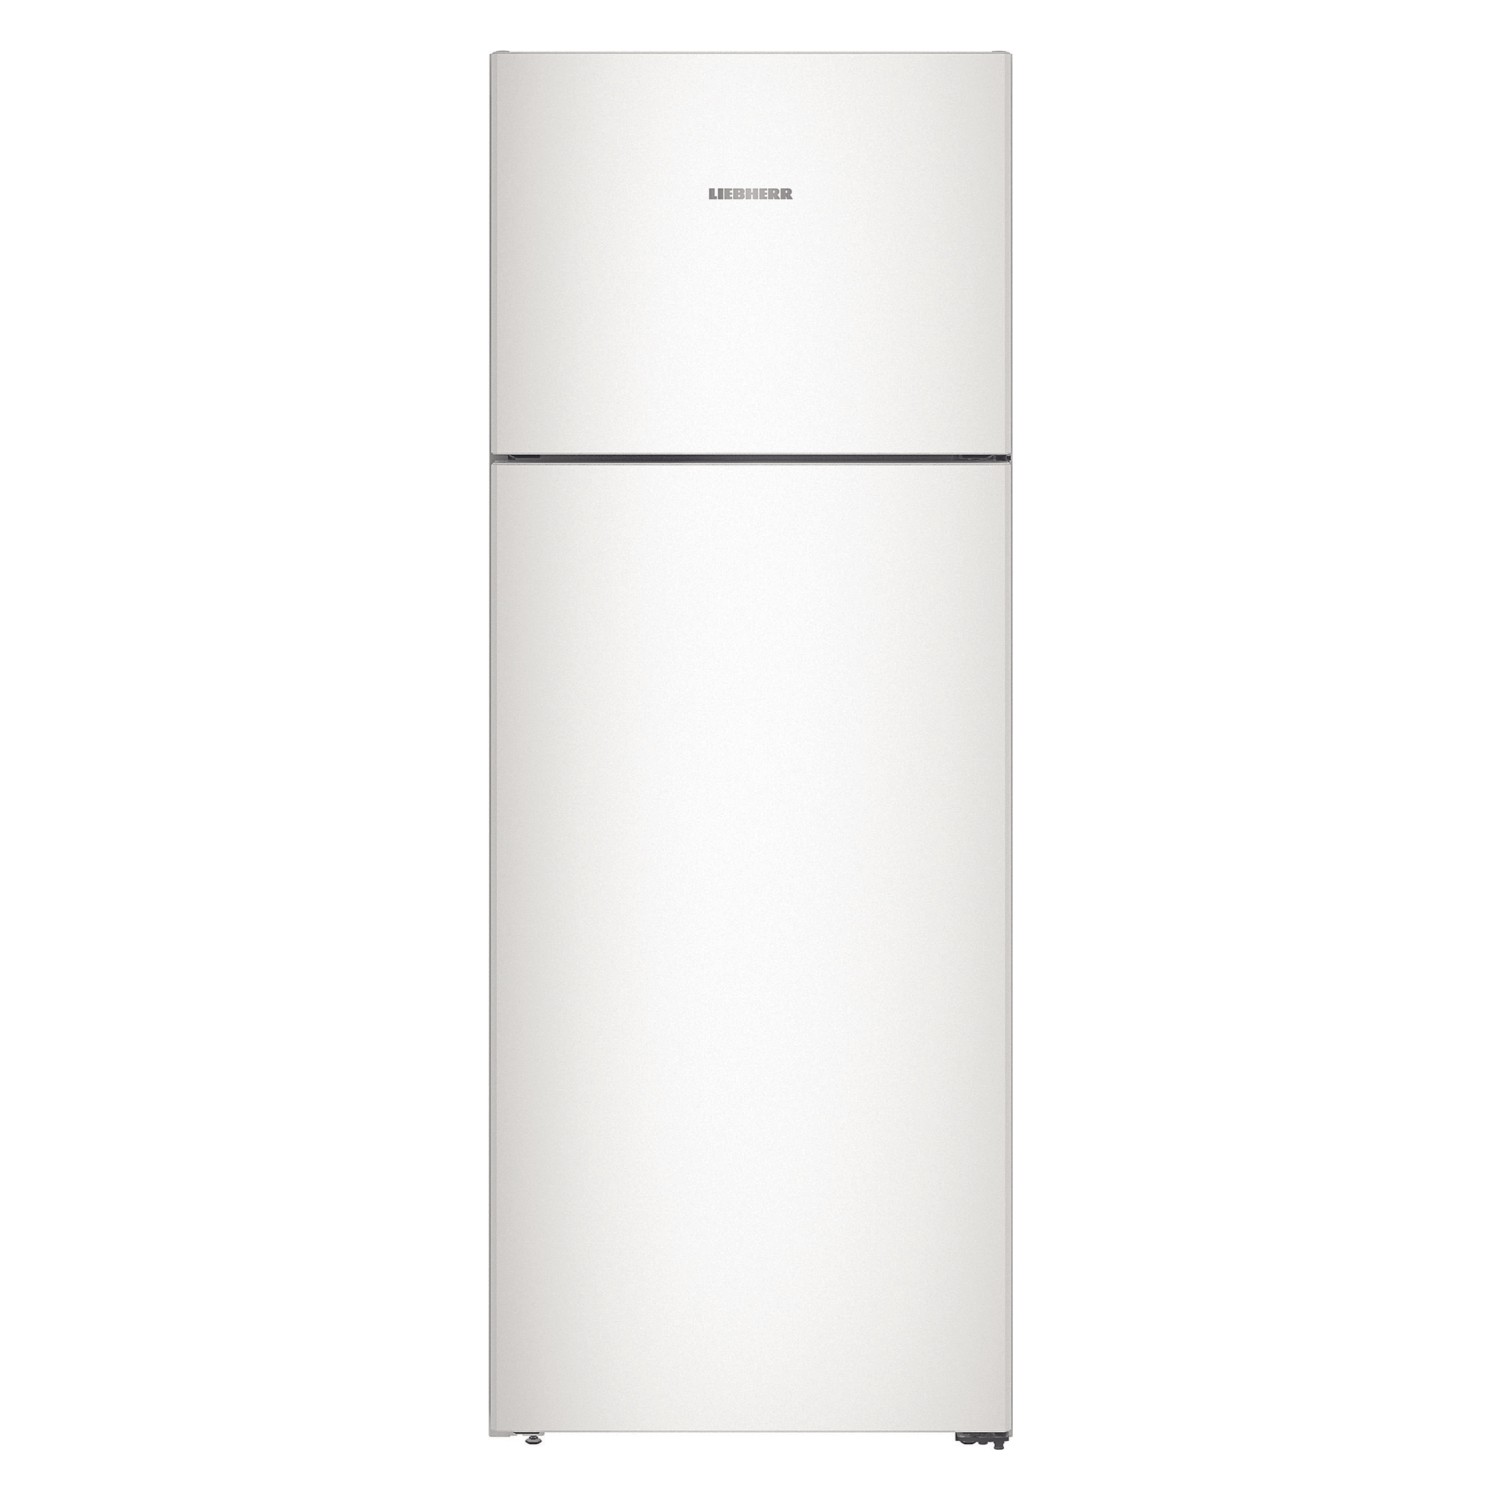 Холодильник двухкамерный купить в днс. Холодильник Hisense rt267d4aw1. Hisense RT-267d4aw1. Холодильник Liebherr CTN 5215. Двухкамерный холодильник Hisense rb372n4aw1.